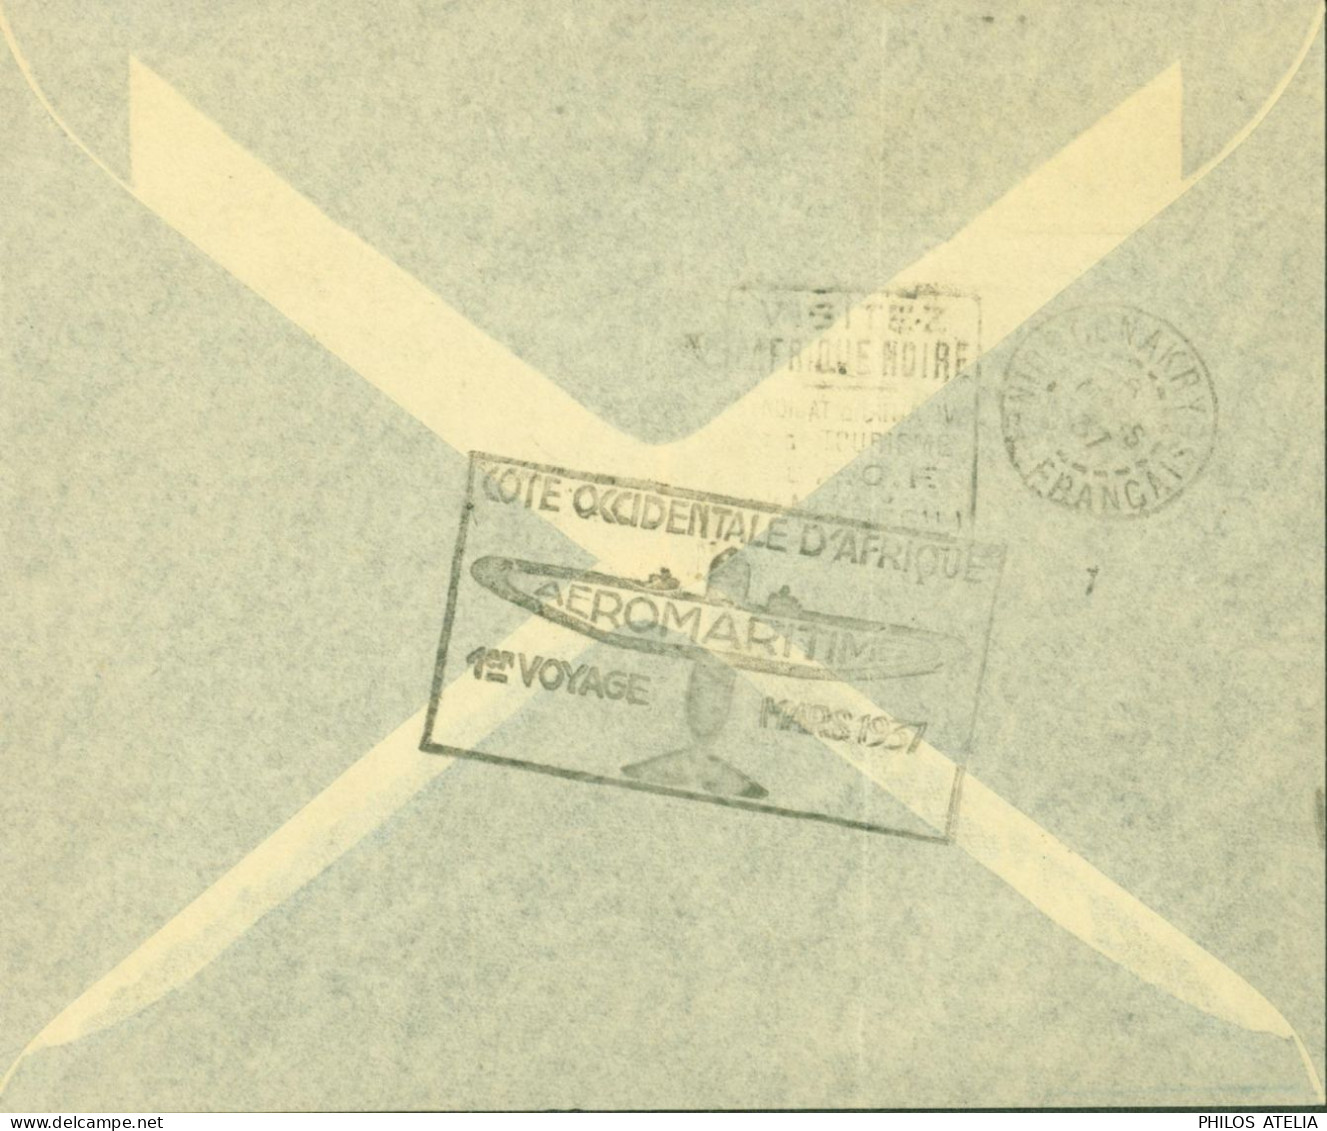 Dahomey YT N°99 101 72 Par Avion Cachet Cote Occidentale D'Afrique Aéromaritime 1er Voyage Mars 1937 CAD Cotonou 4 3 37 - Brieven En Documenten